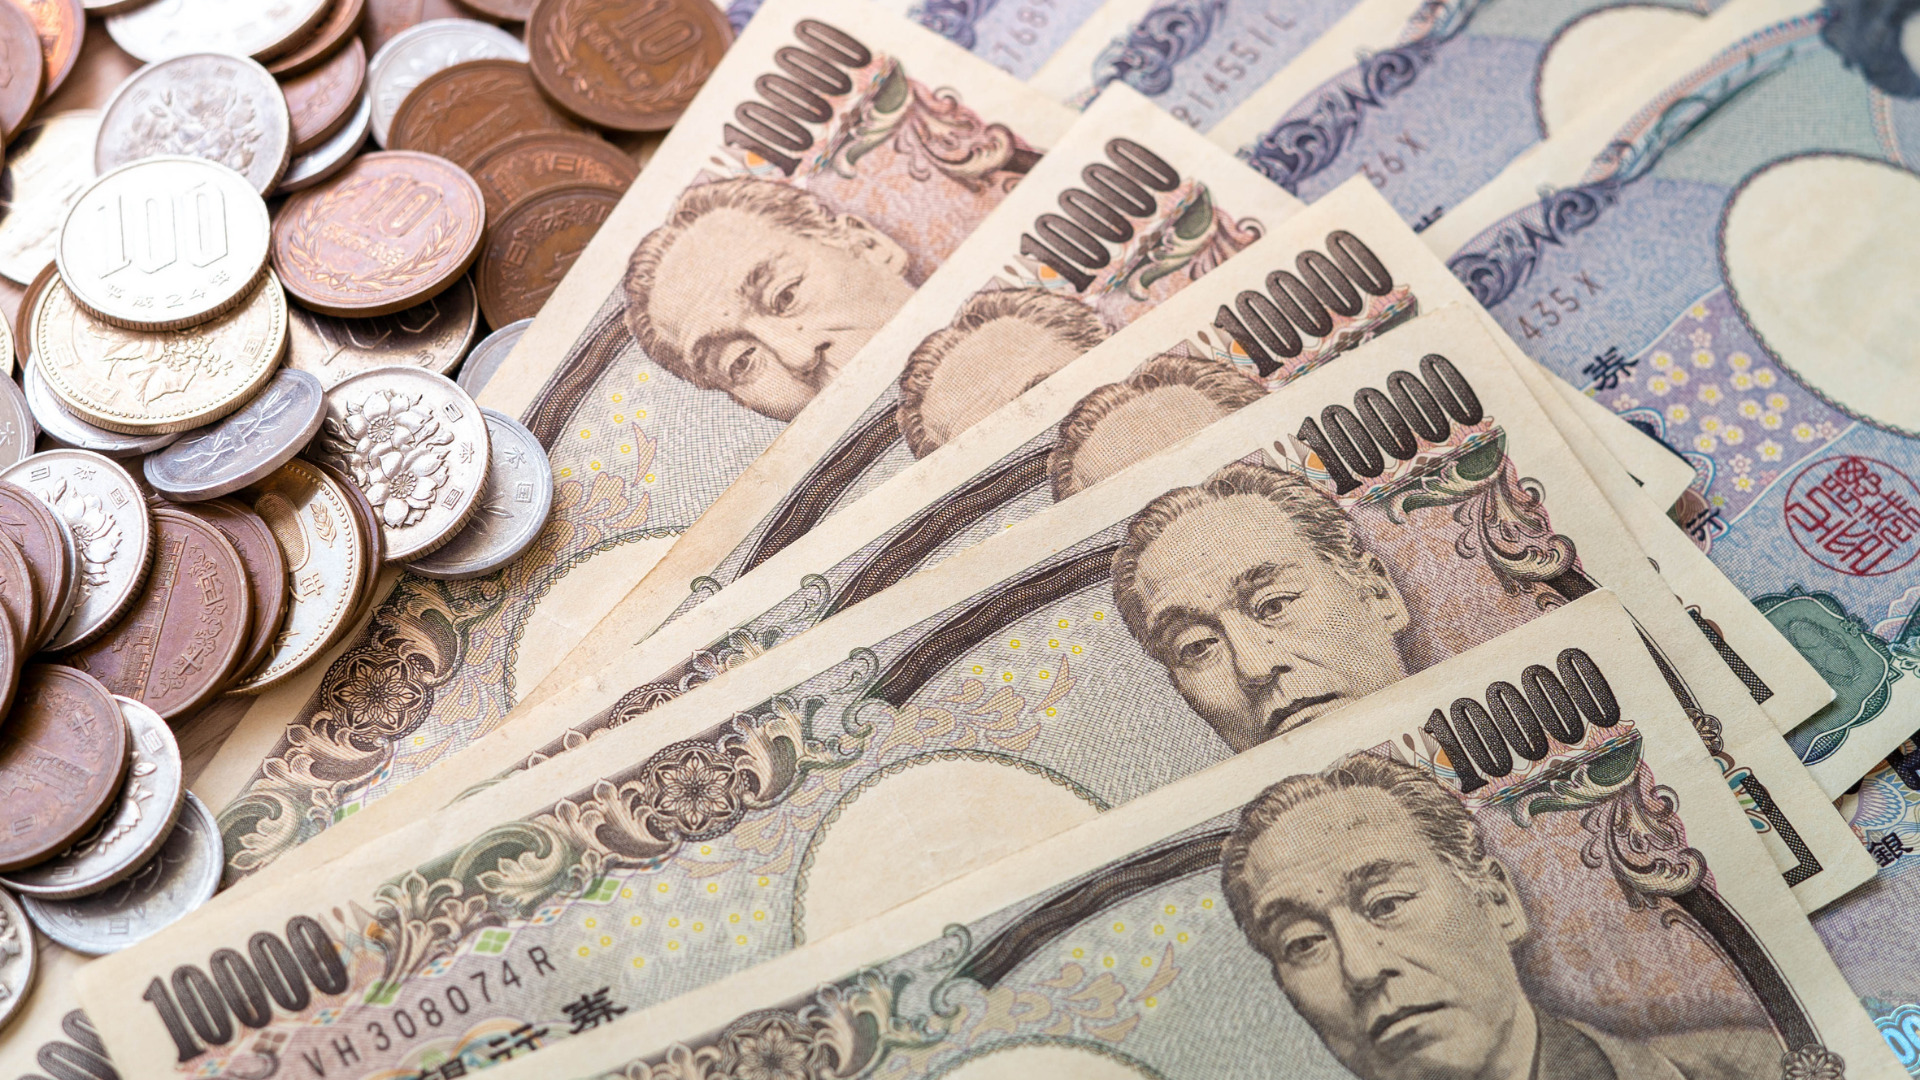 เงินทองและการใช้ชีวิตในประเทศญี่ปุ่น